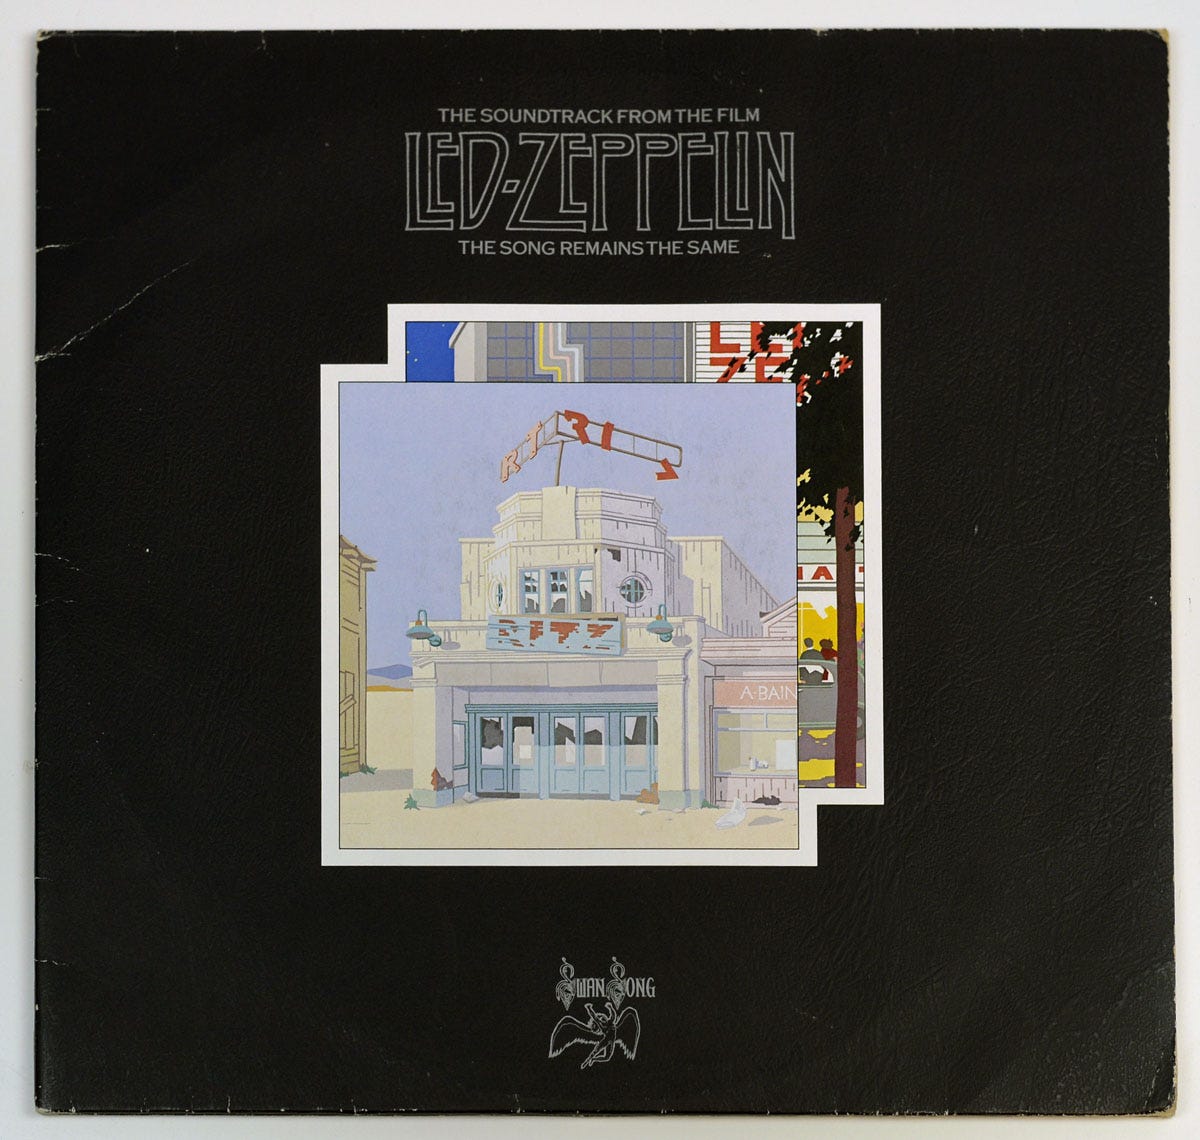 pochette de disque, image d'un bar américain, Led Zeppelin, Angleterre